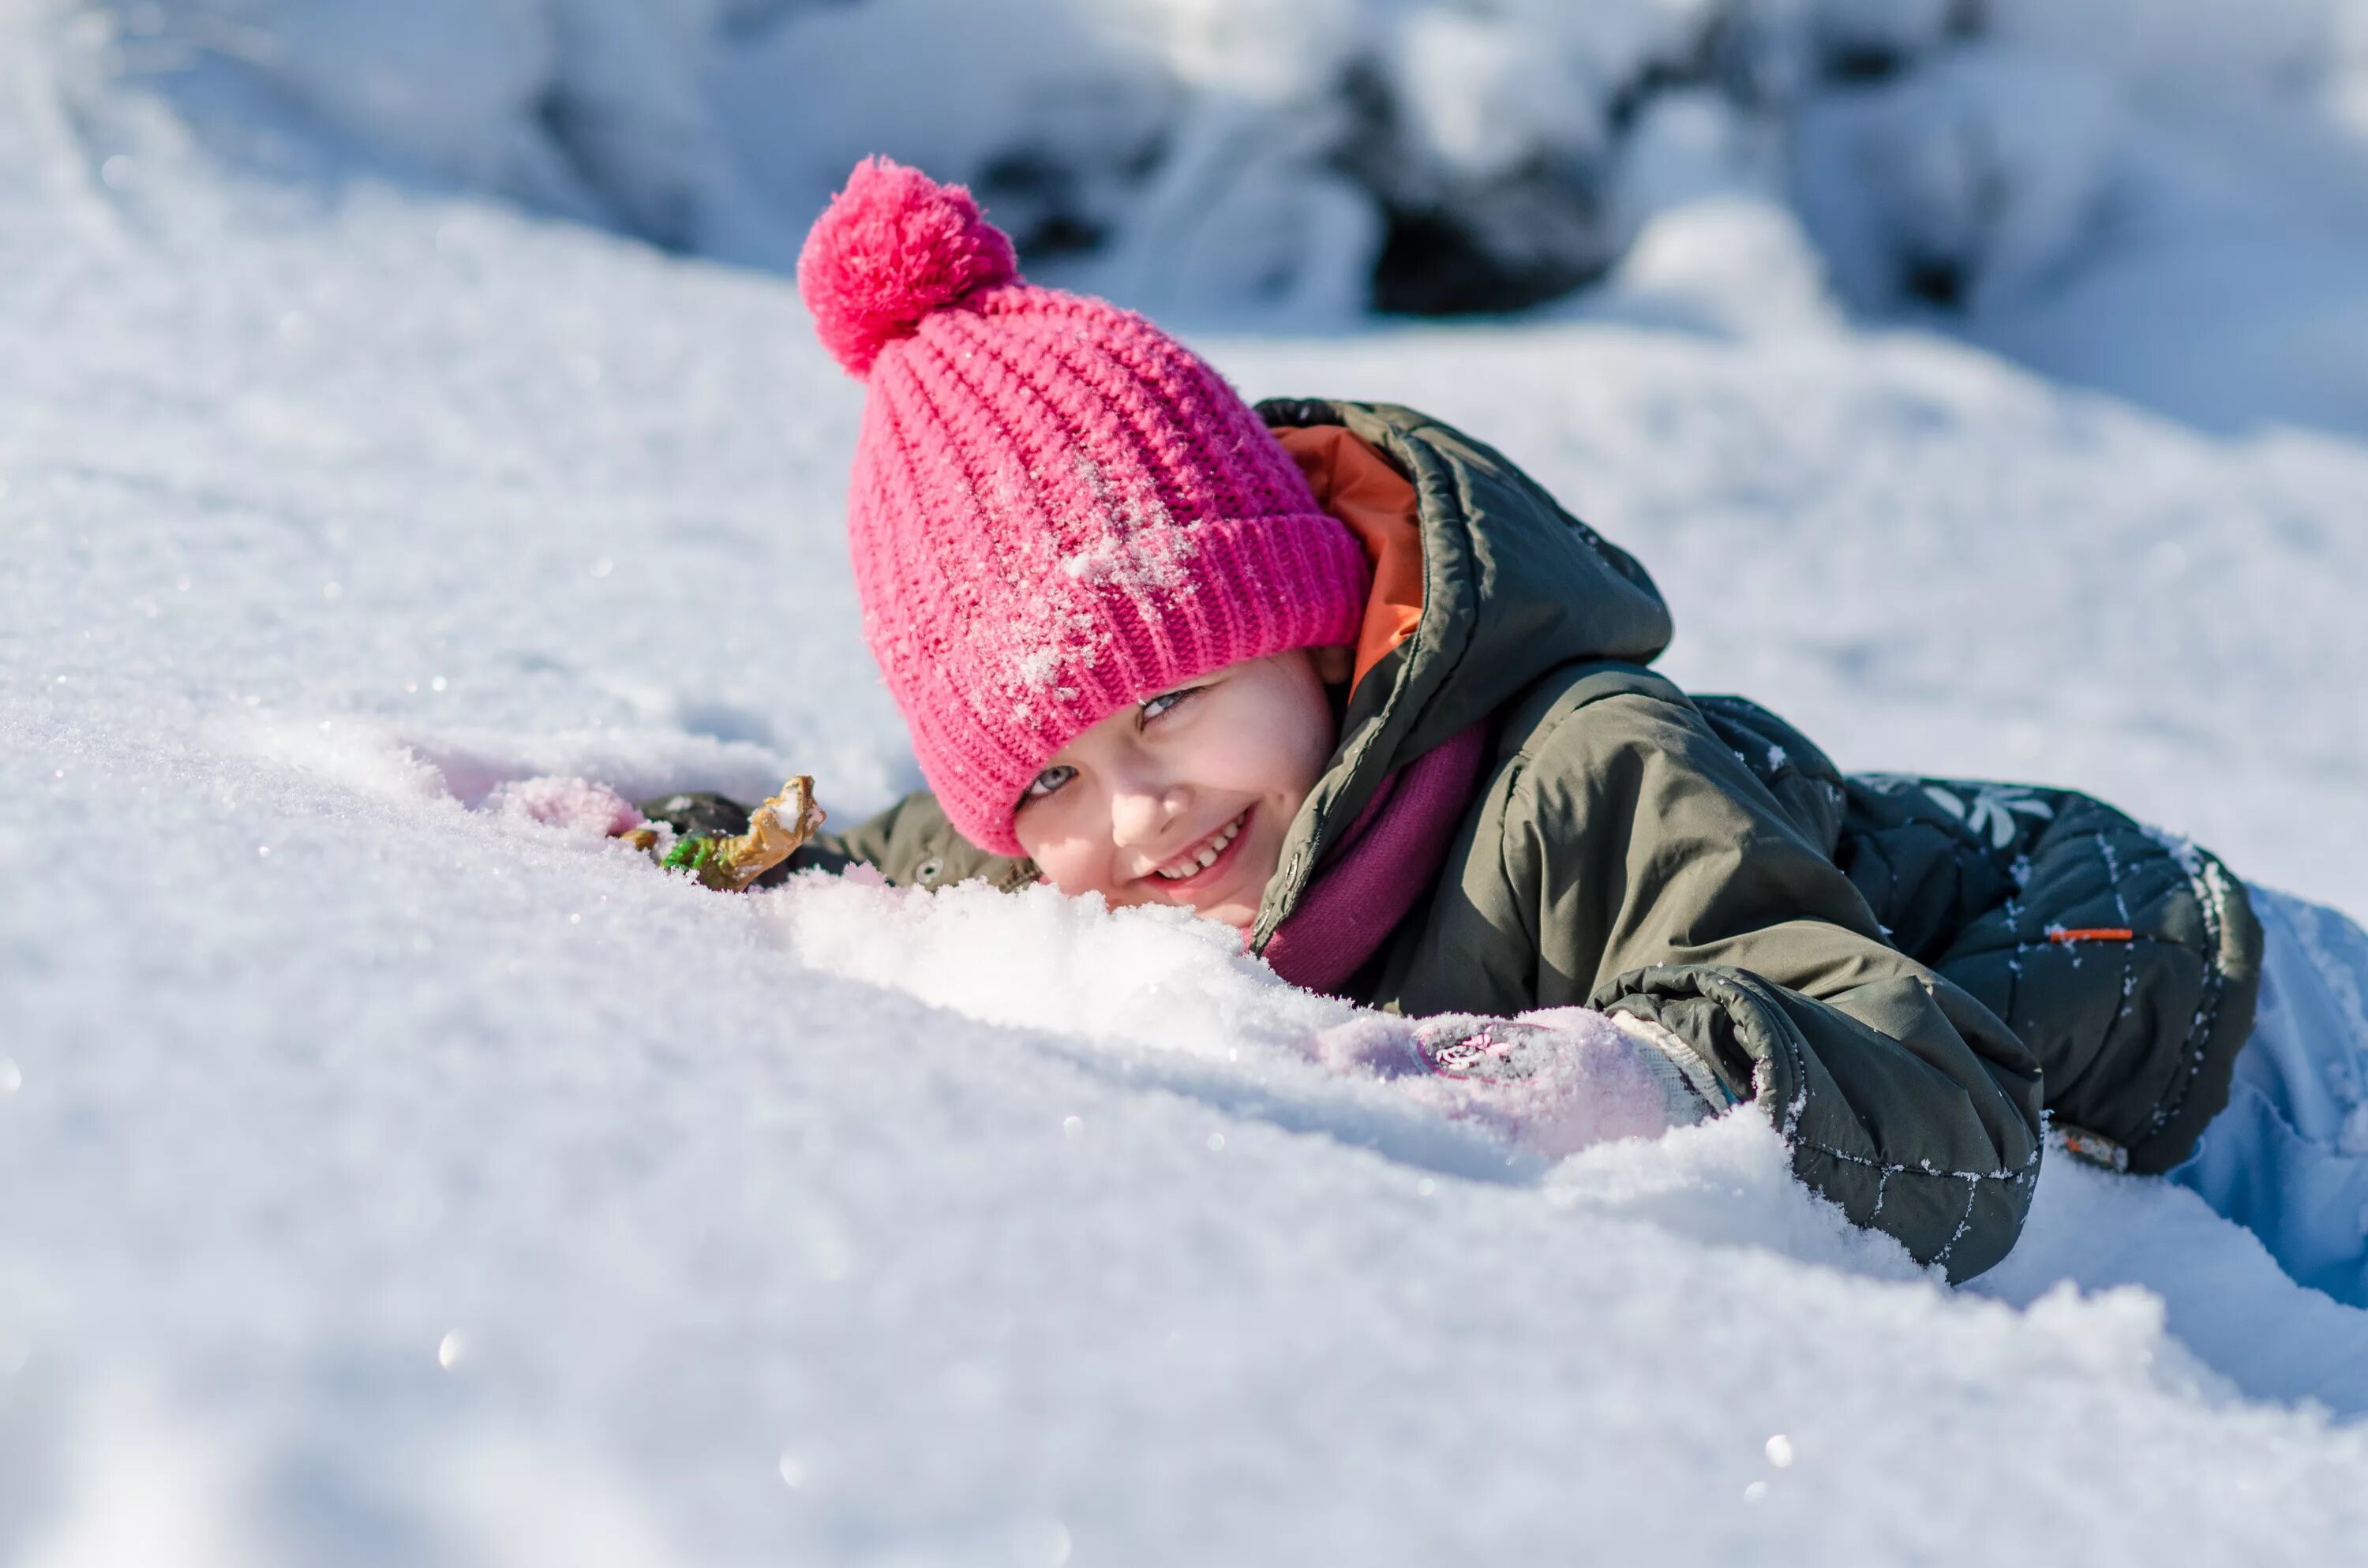 Дети зимой. Дети в снегу. Ребенок в сугробе. Дети радуются снегу. Солнце играет на снегу